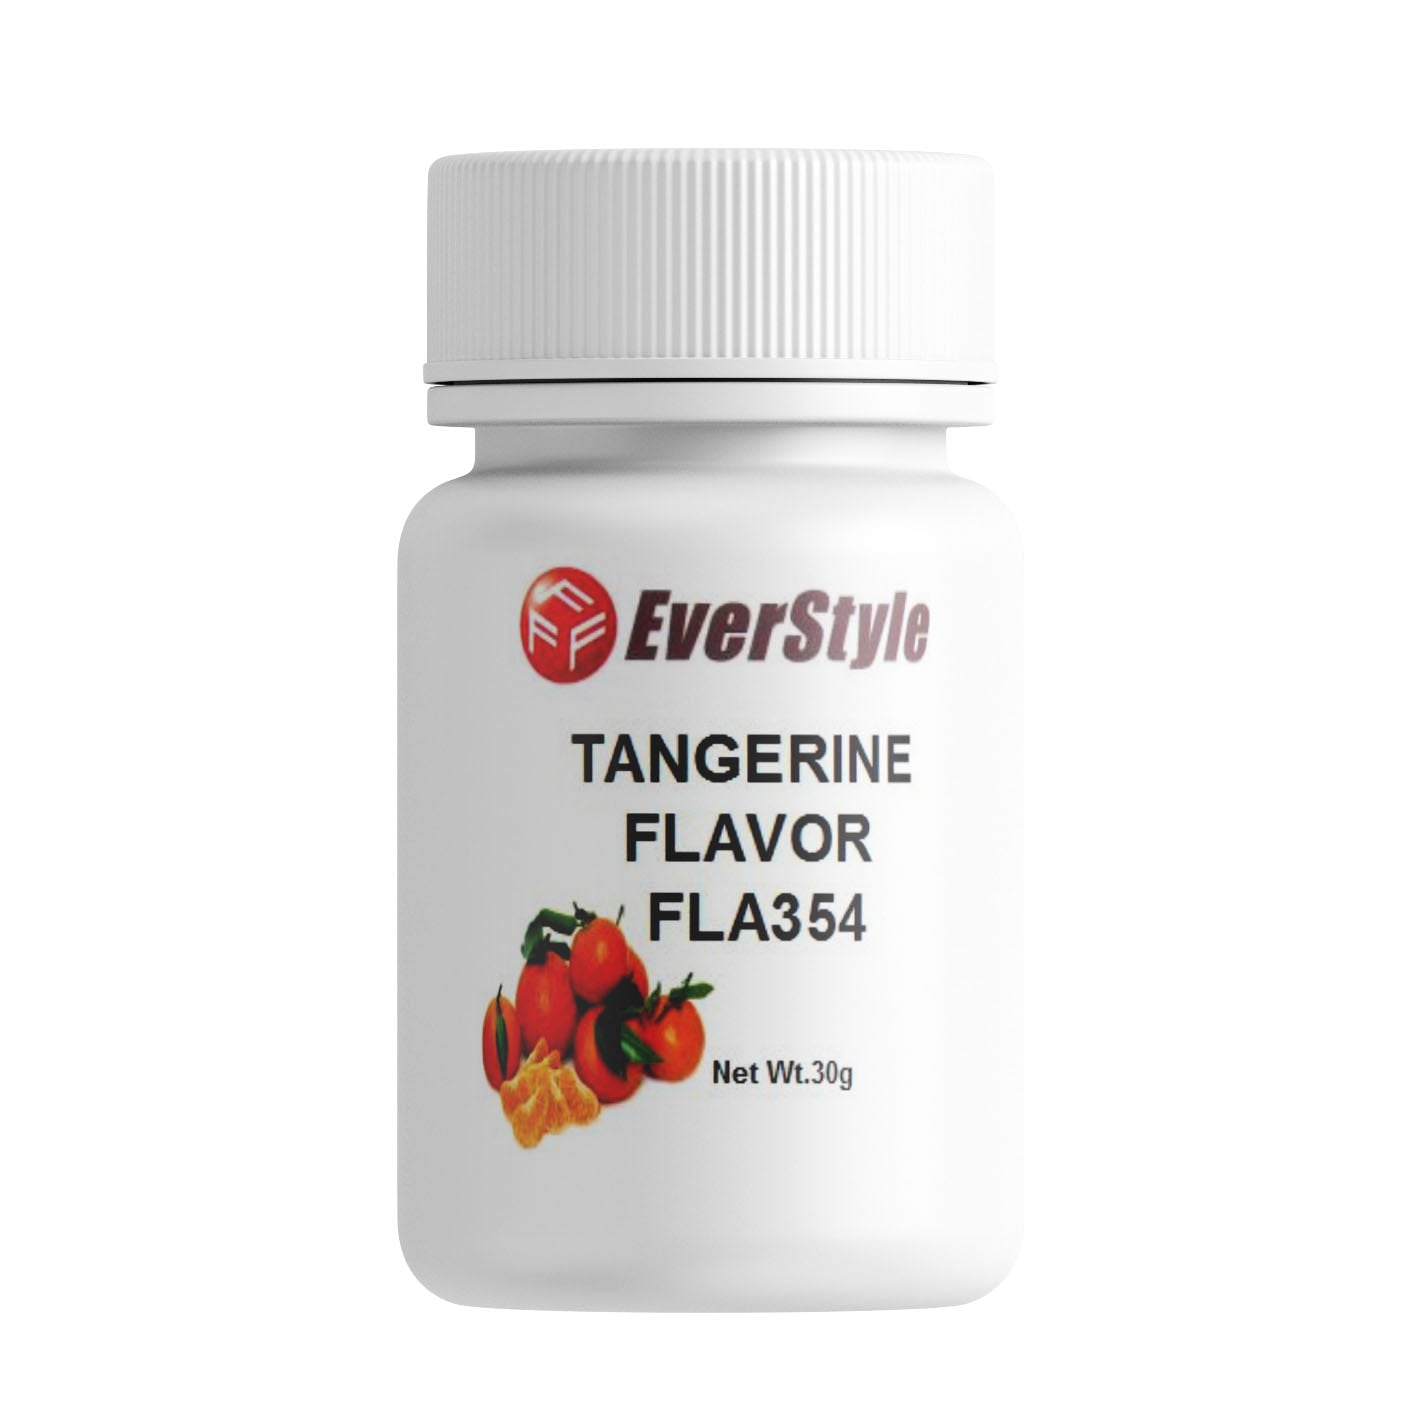 Everstyle Tangerine Flavor 30g (FLA354)